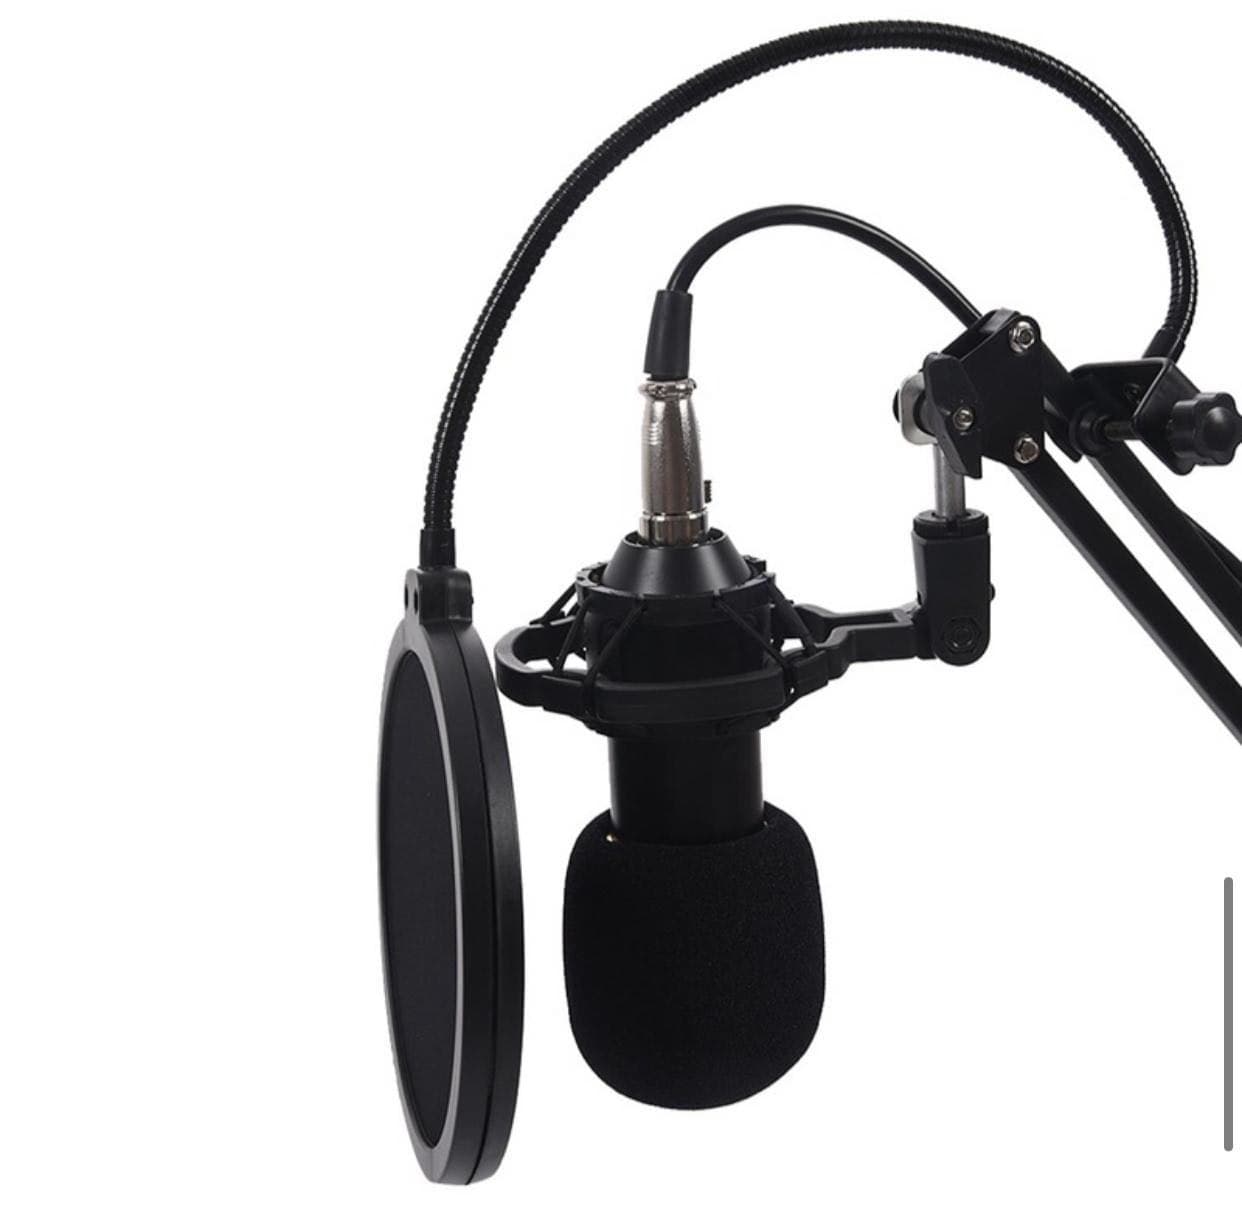 Конденсаторный студийный микрофон Professional Condenser Microphone BM-800 оптом